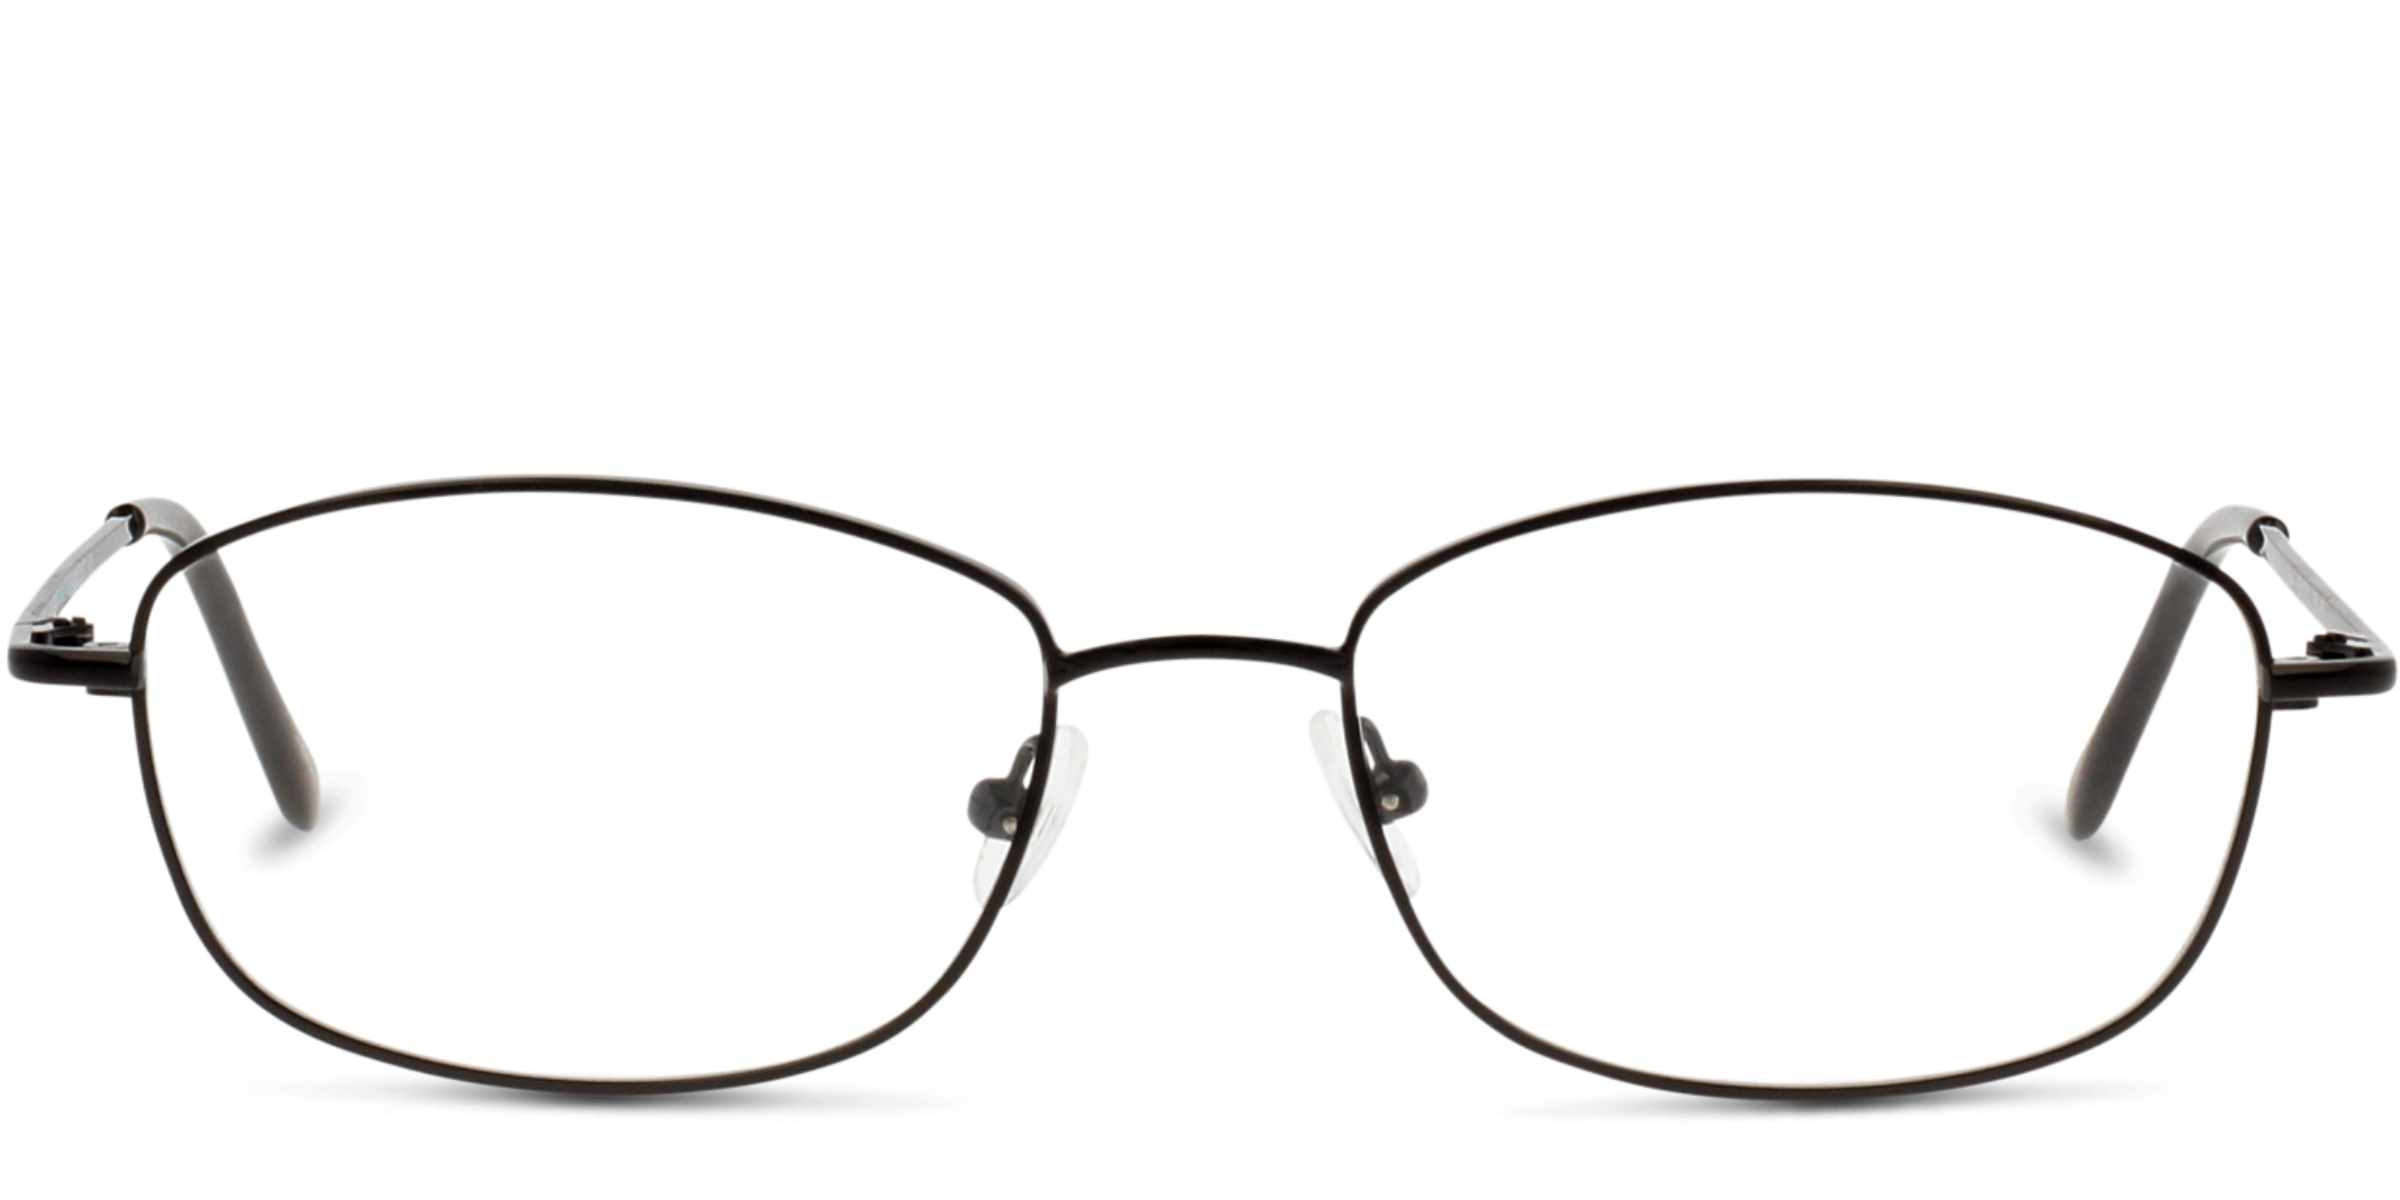 Best Online Eyeglasses 2022